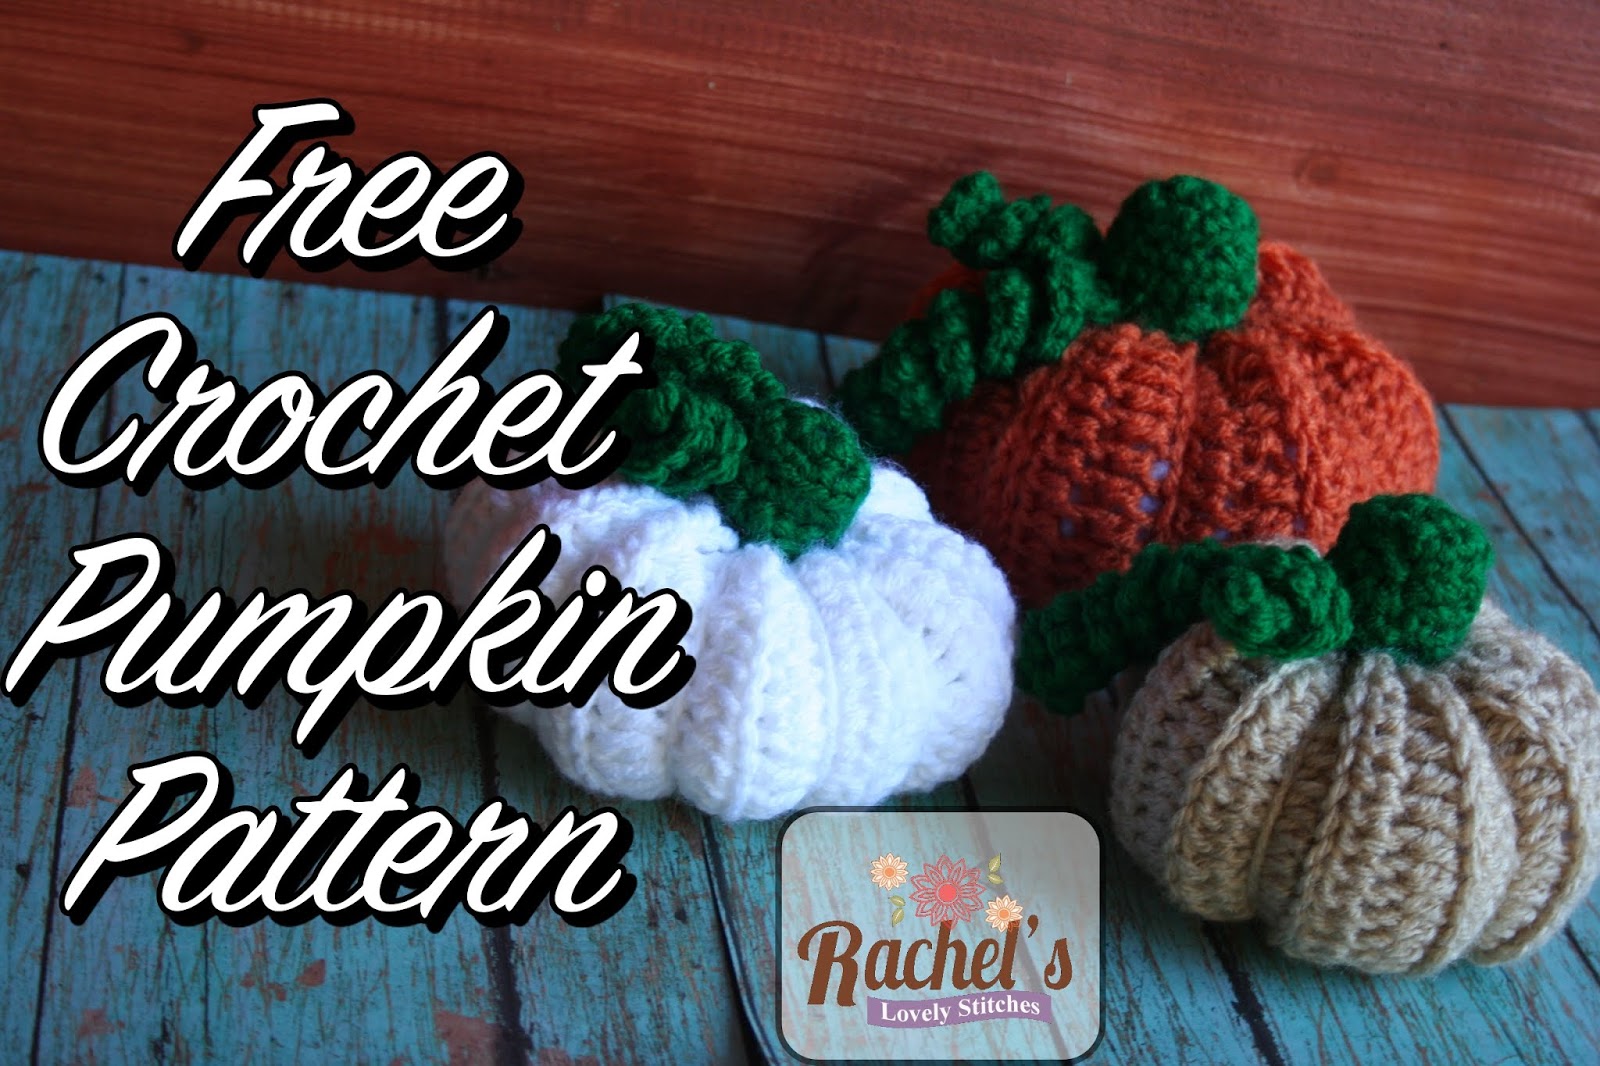 rachel-s-lovely-stitches-crochet-pumpkin-pattern-free-crochet-pattern